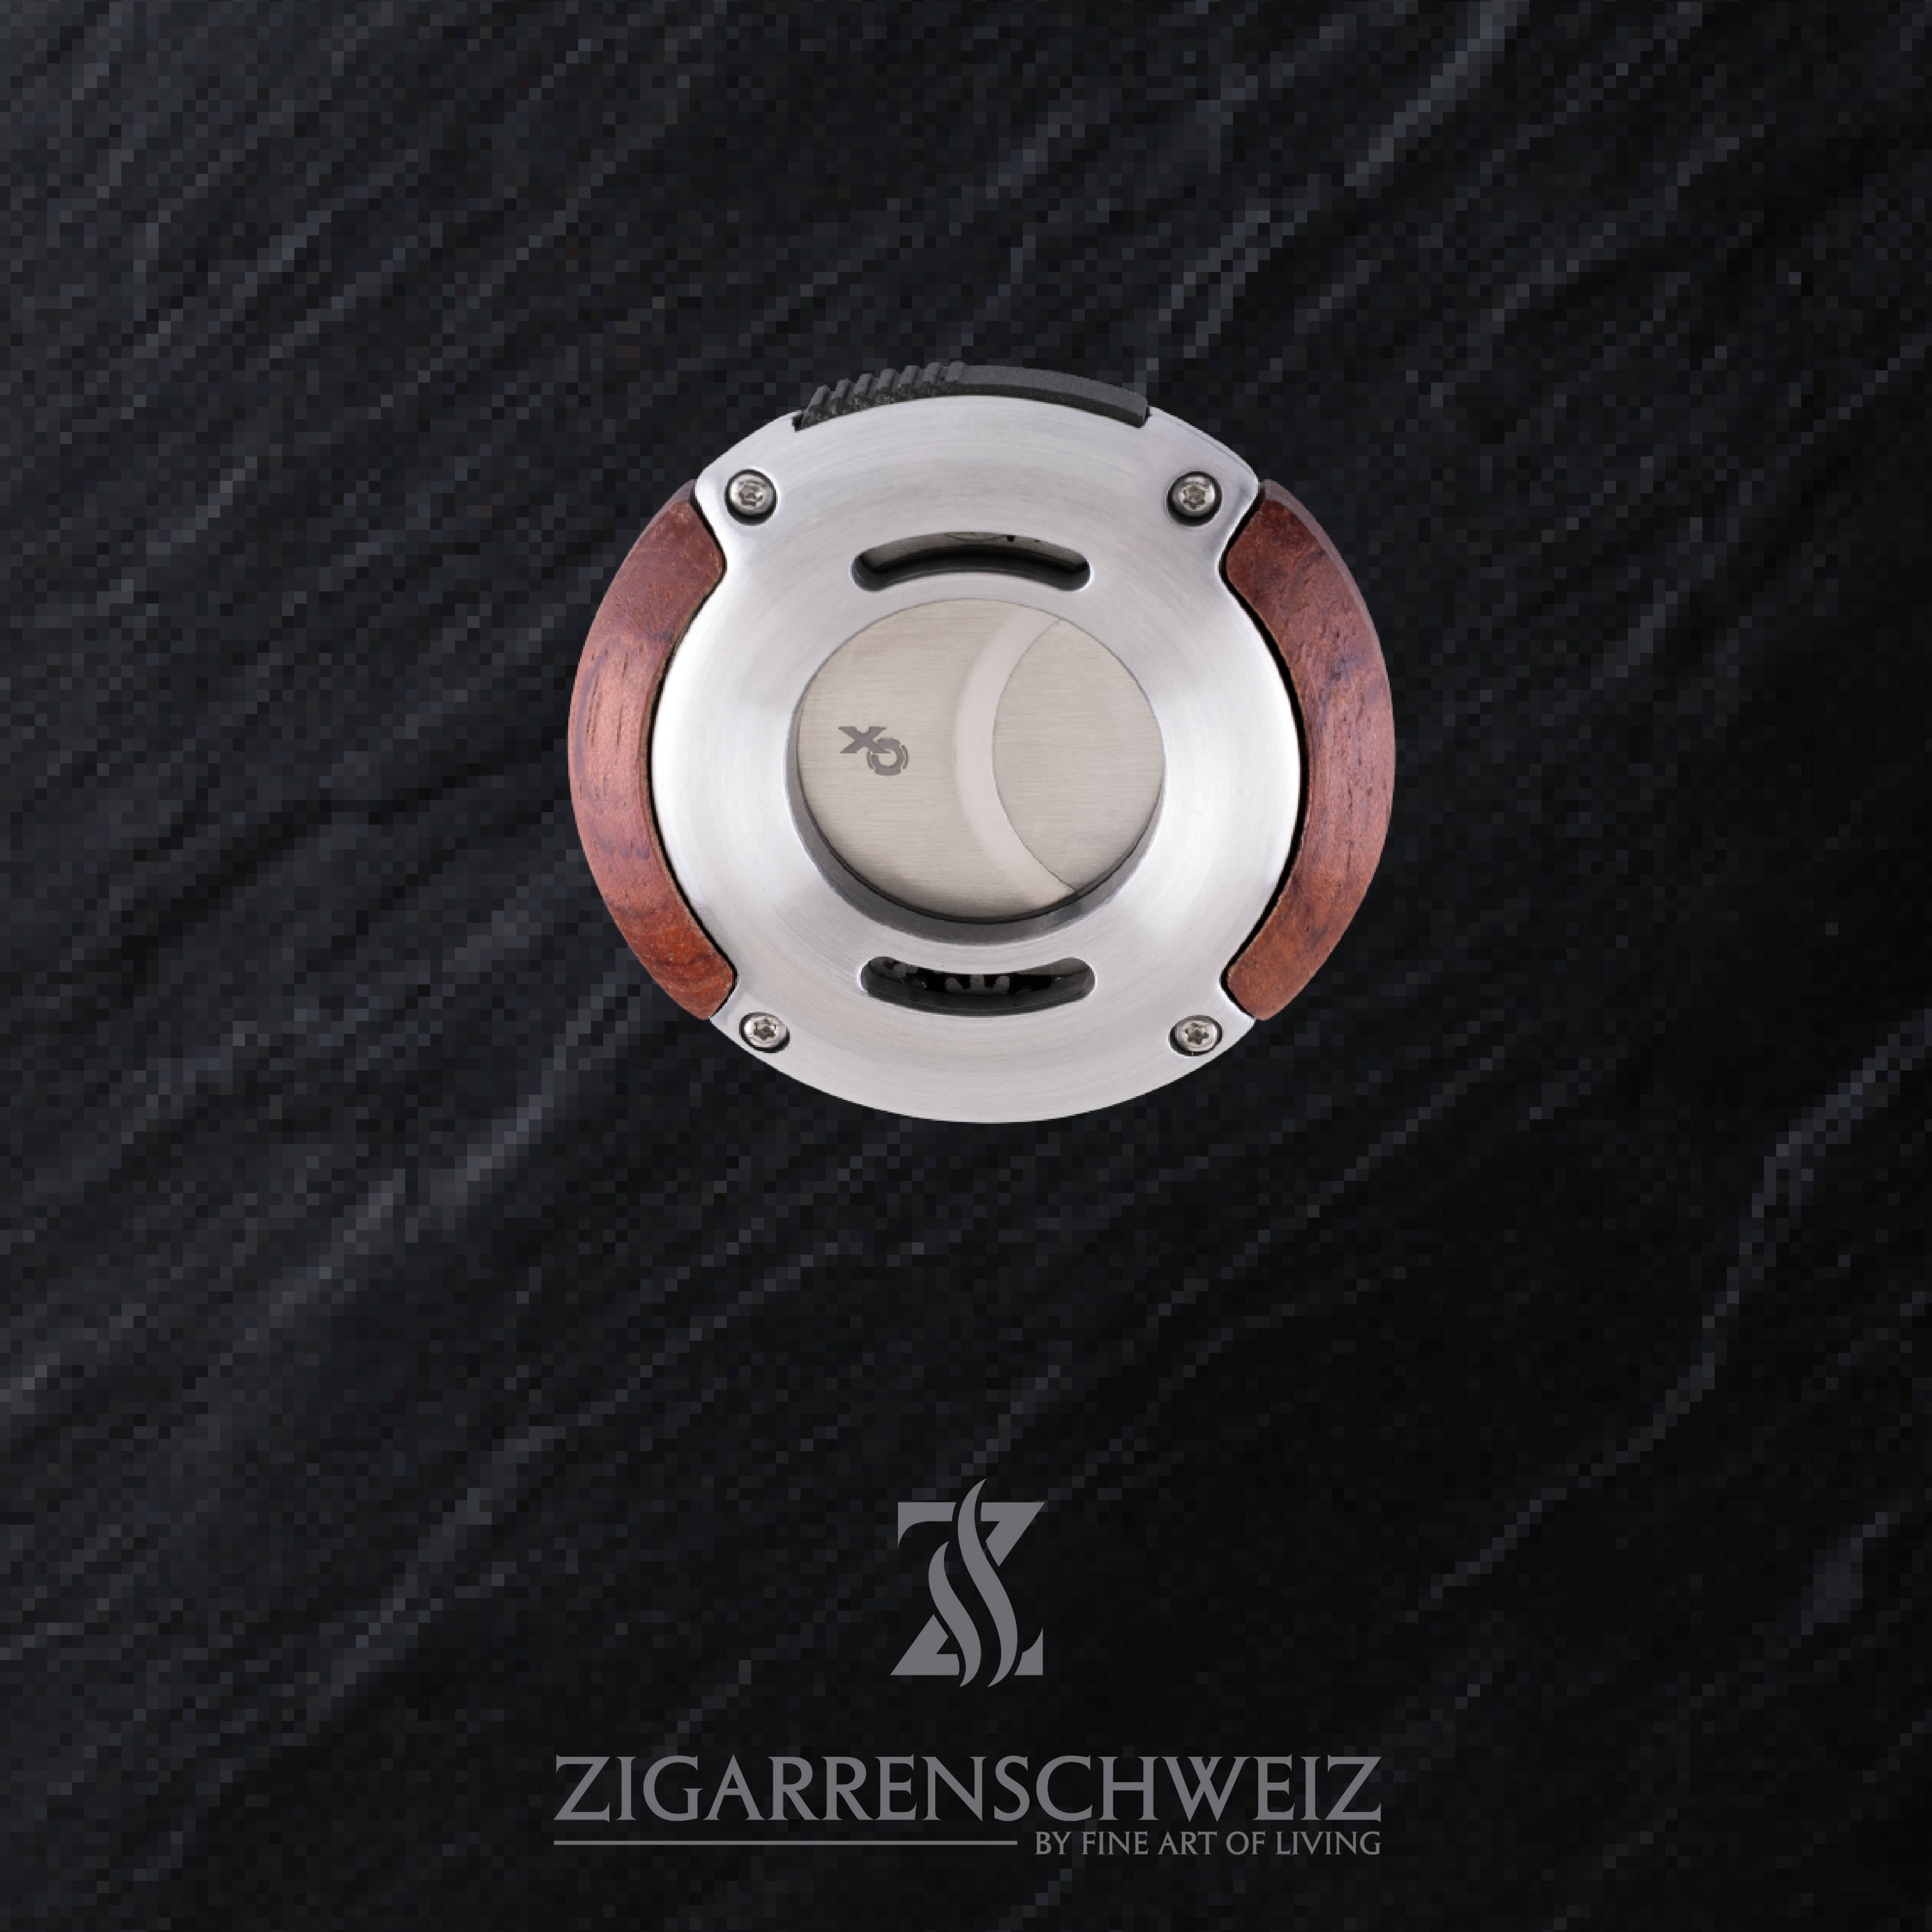 Xikar XO Zigarren Cutter, Farbe Gehäuse: Silber mit Rosenholzeinlage, Farbe Klingen: Silber, geschlossen